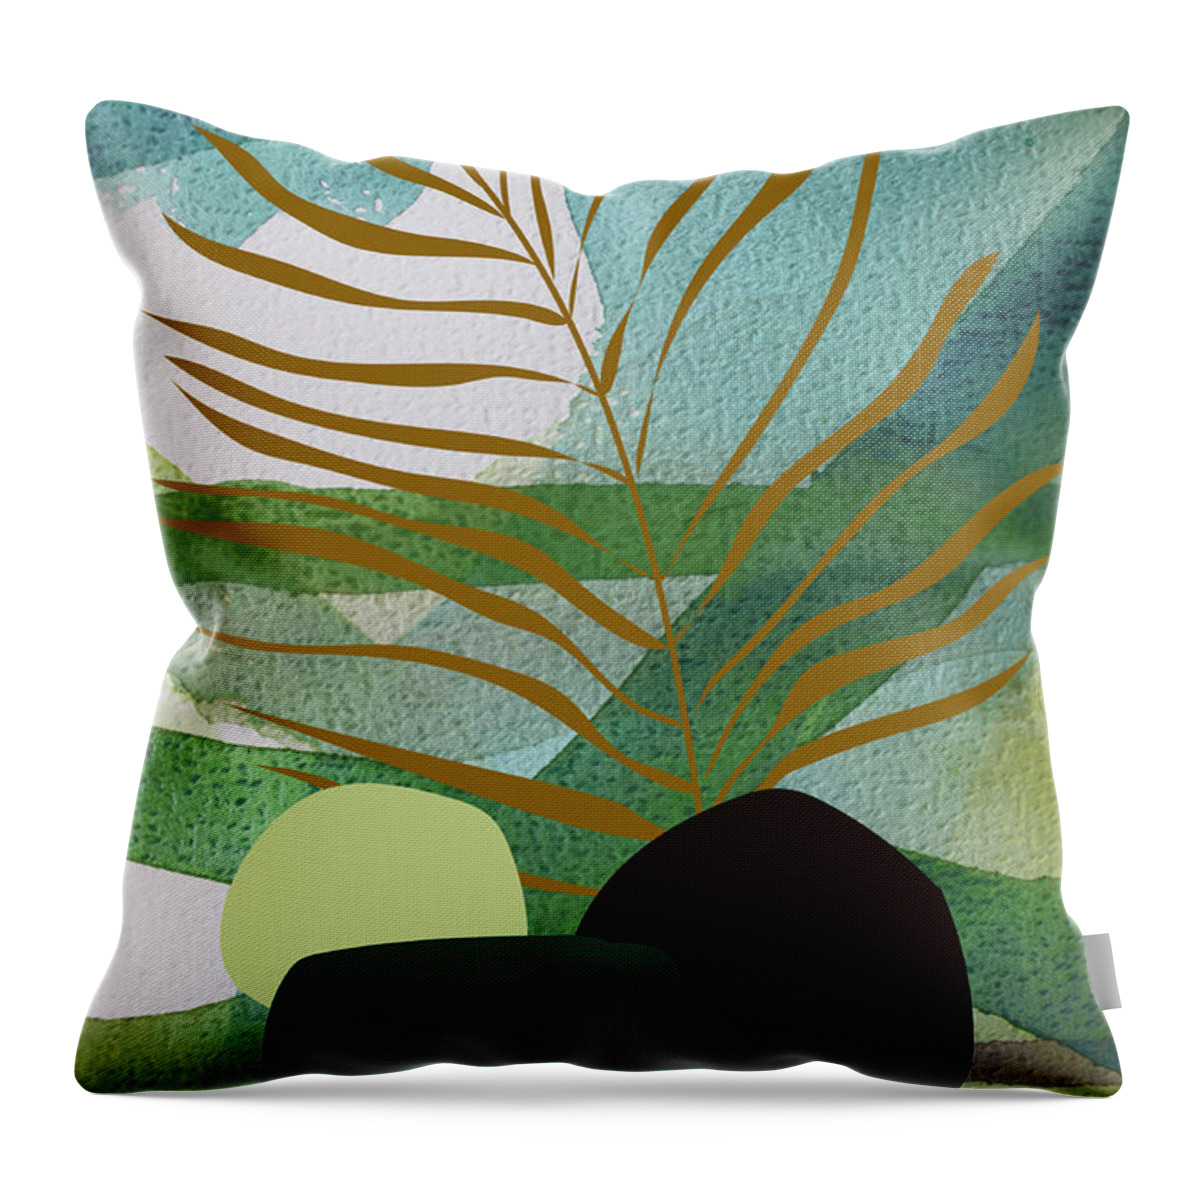 Summer Throw Pillow featuring the painting Green garden by Johanna Virtanen